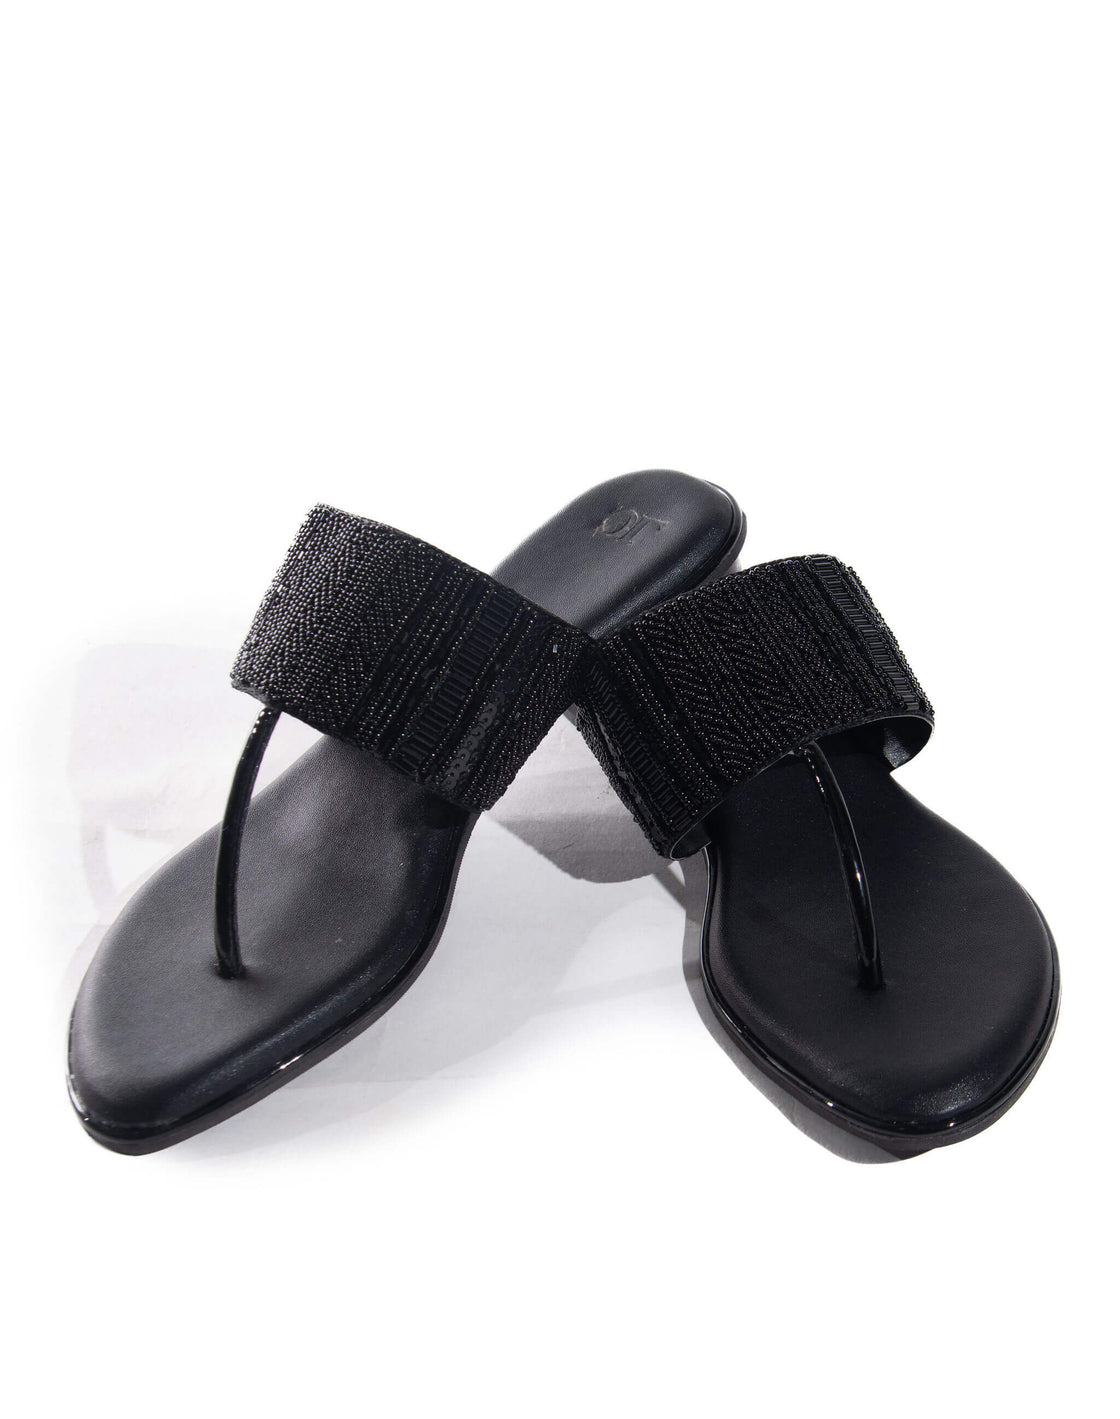 Kyla - Flat sandal - Beaded upper